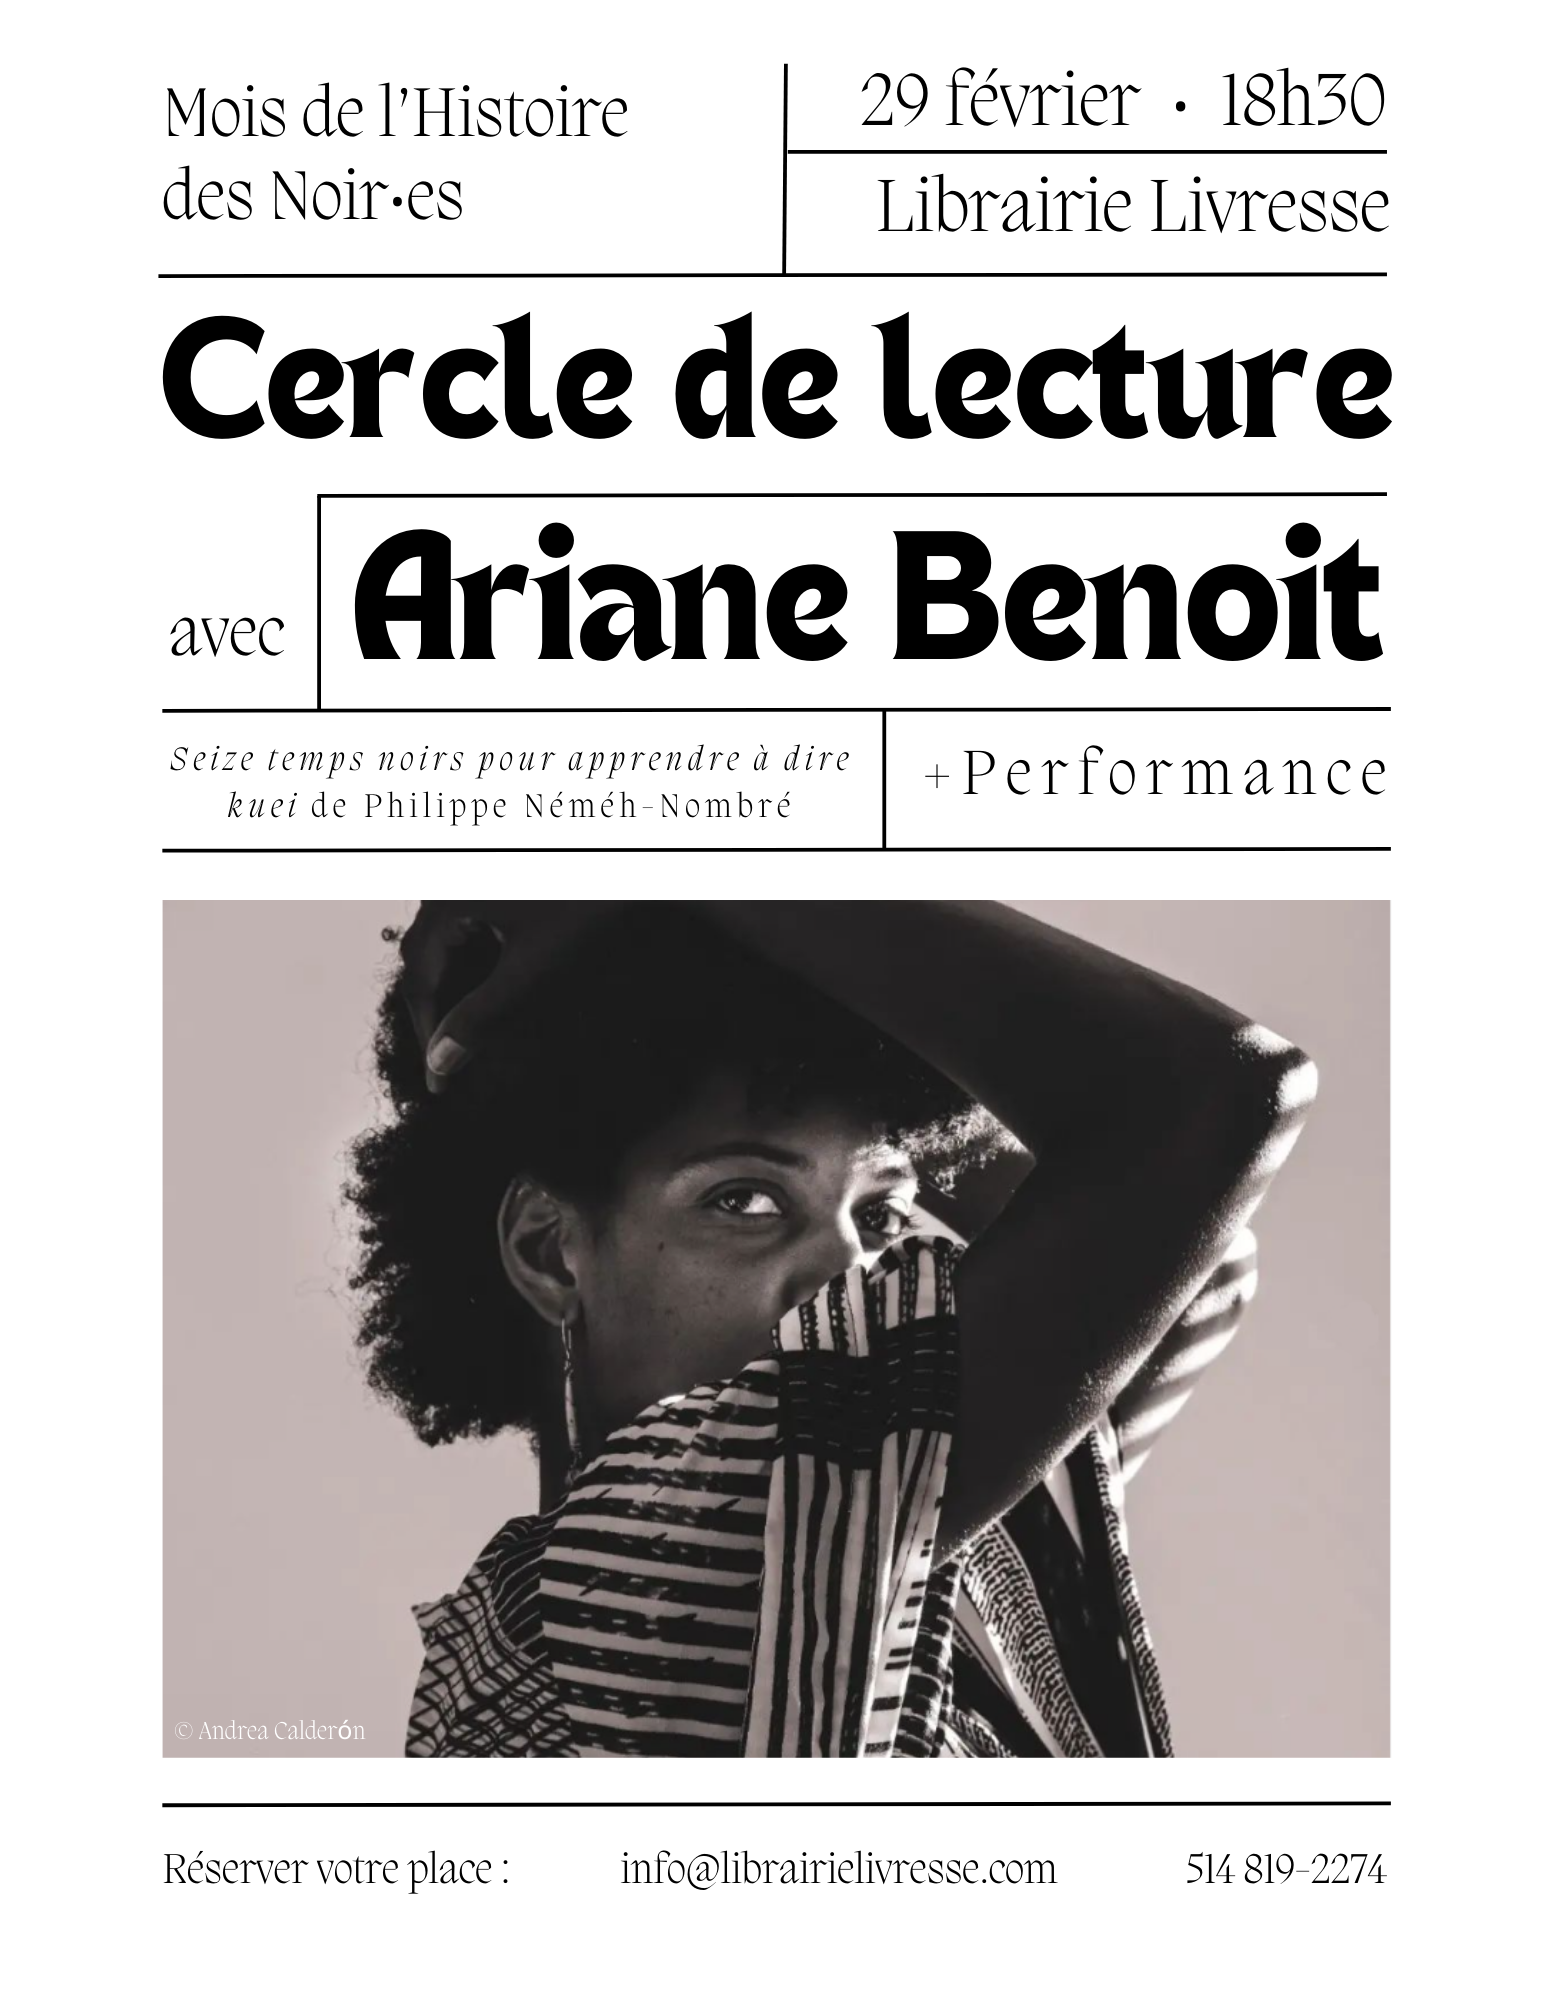 Performance et cercle de lecture avec Ariane Benoit.